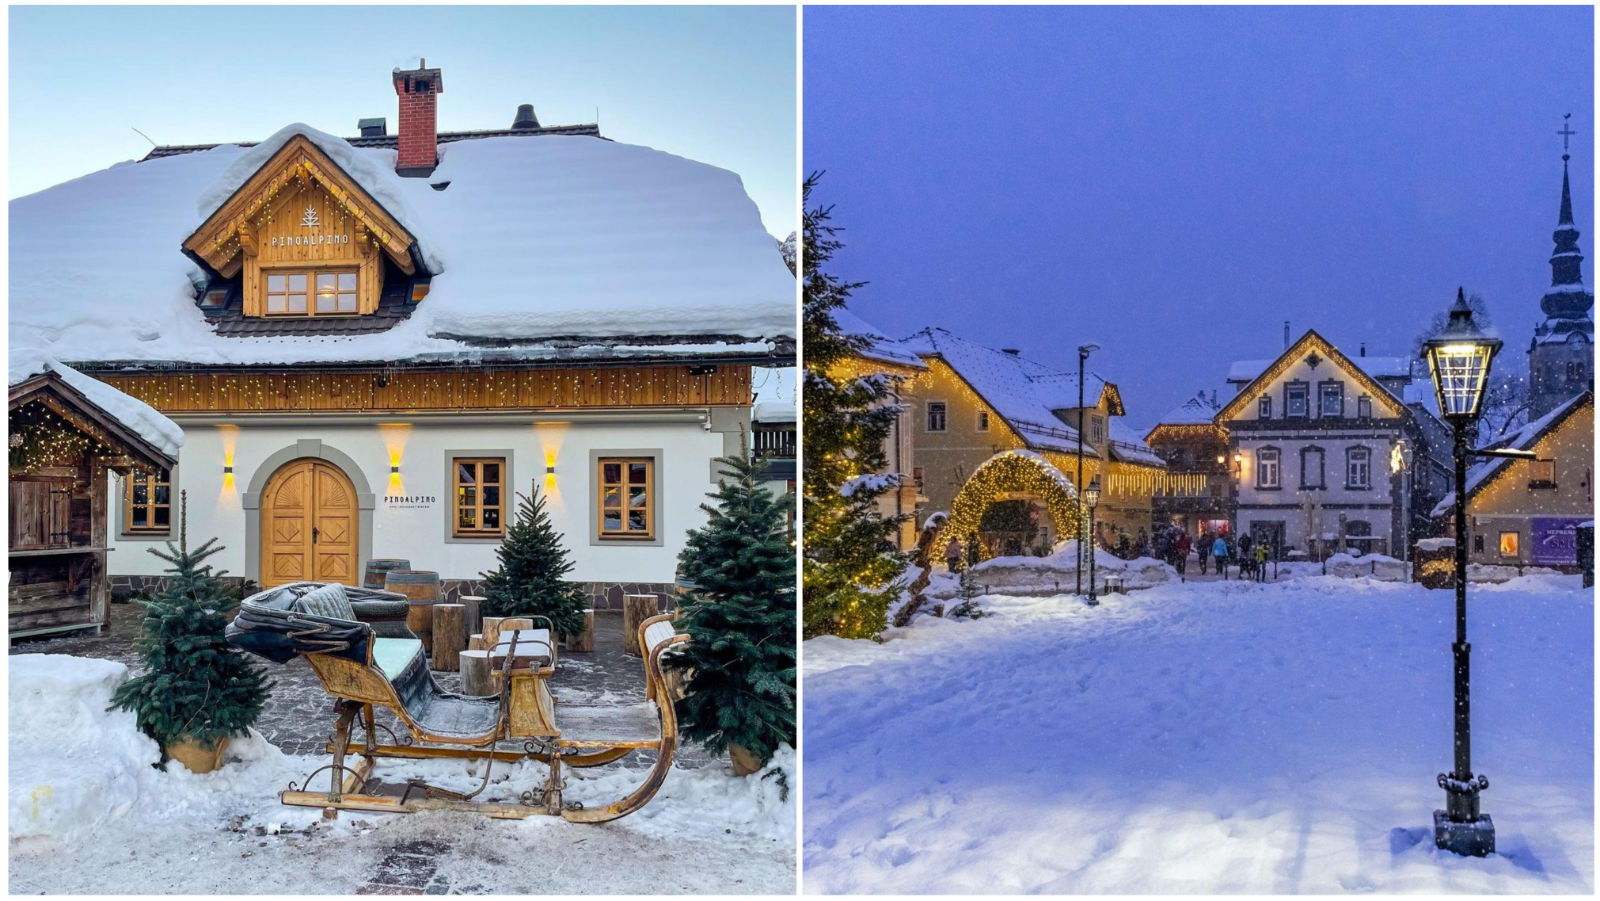 U Sloveniji smo pronašli bajkovito malo mjesto pokriveno snijegom koje želimo posjetiti